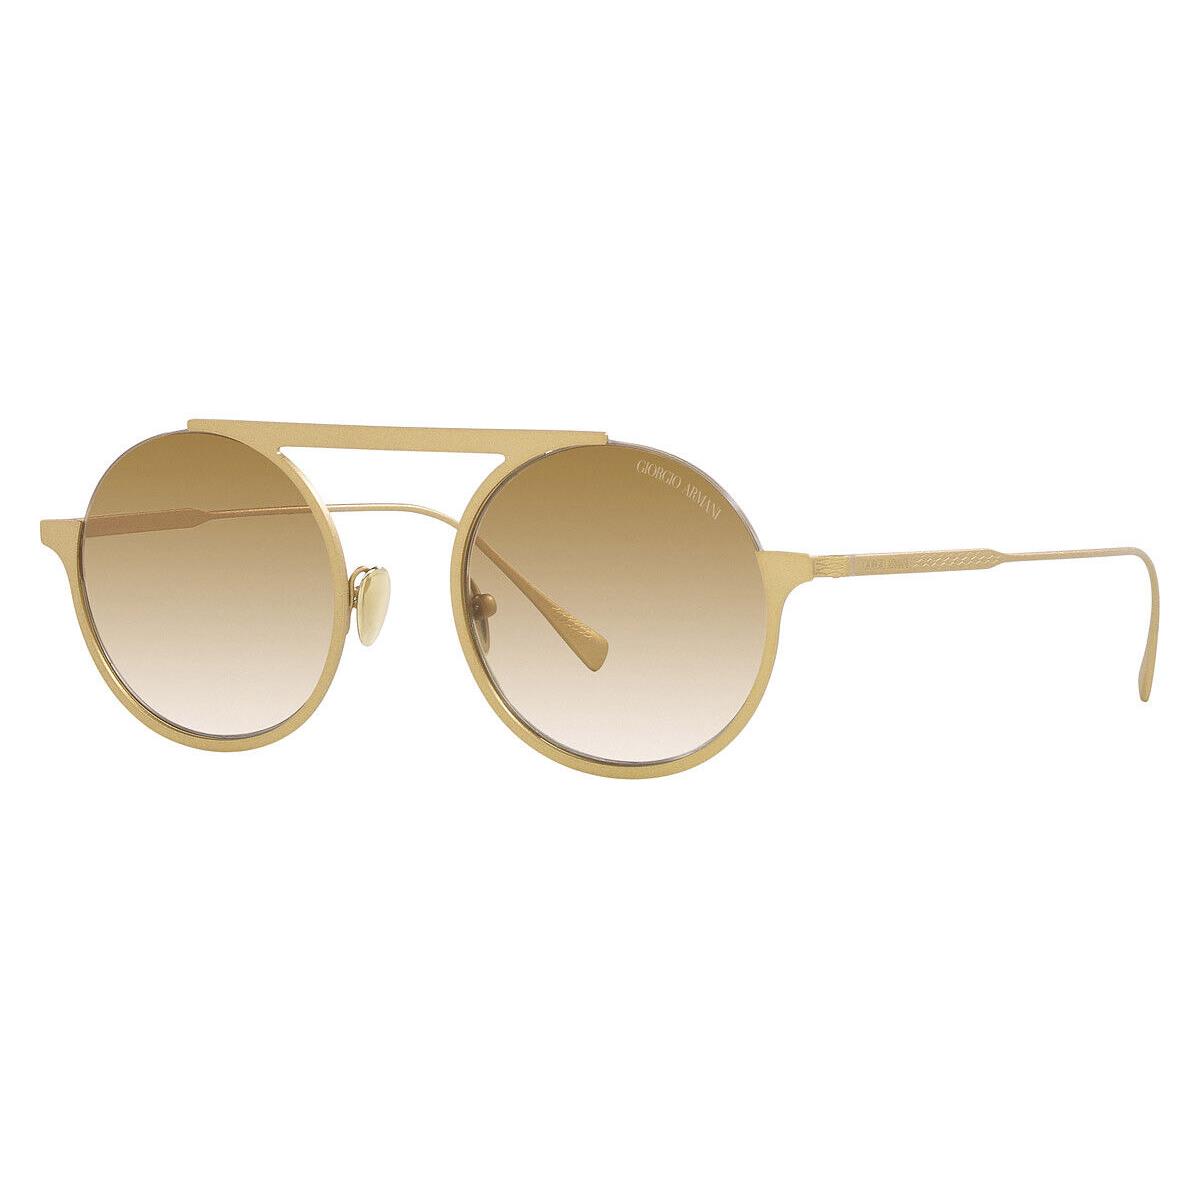 Giorgio Armani AR6146 Sunglasses Women Round 47mm